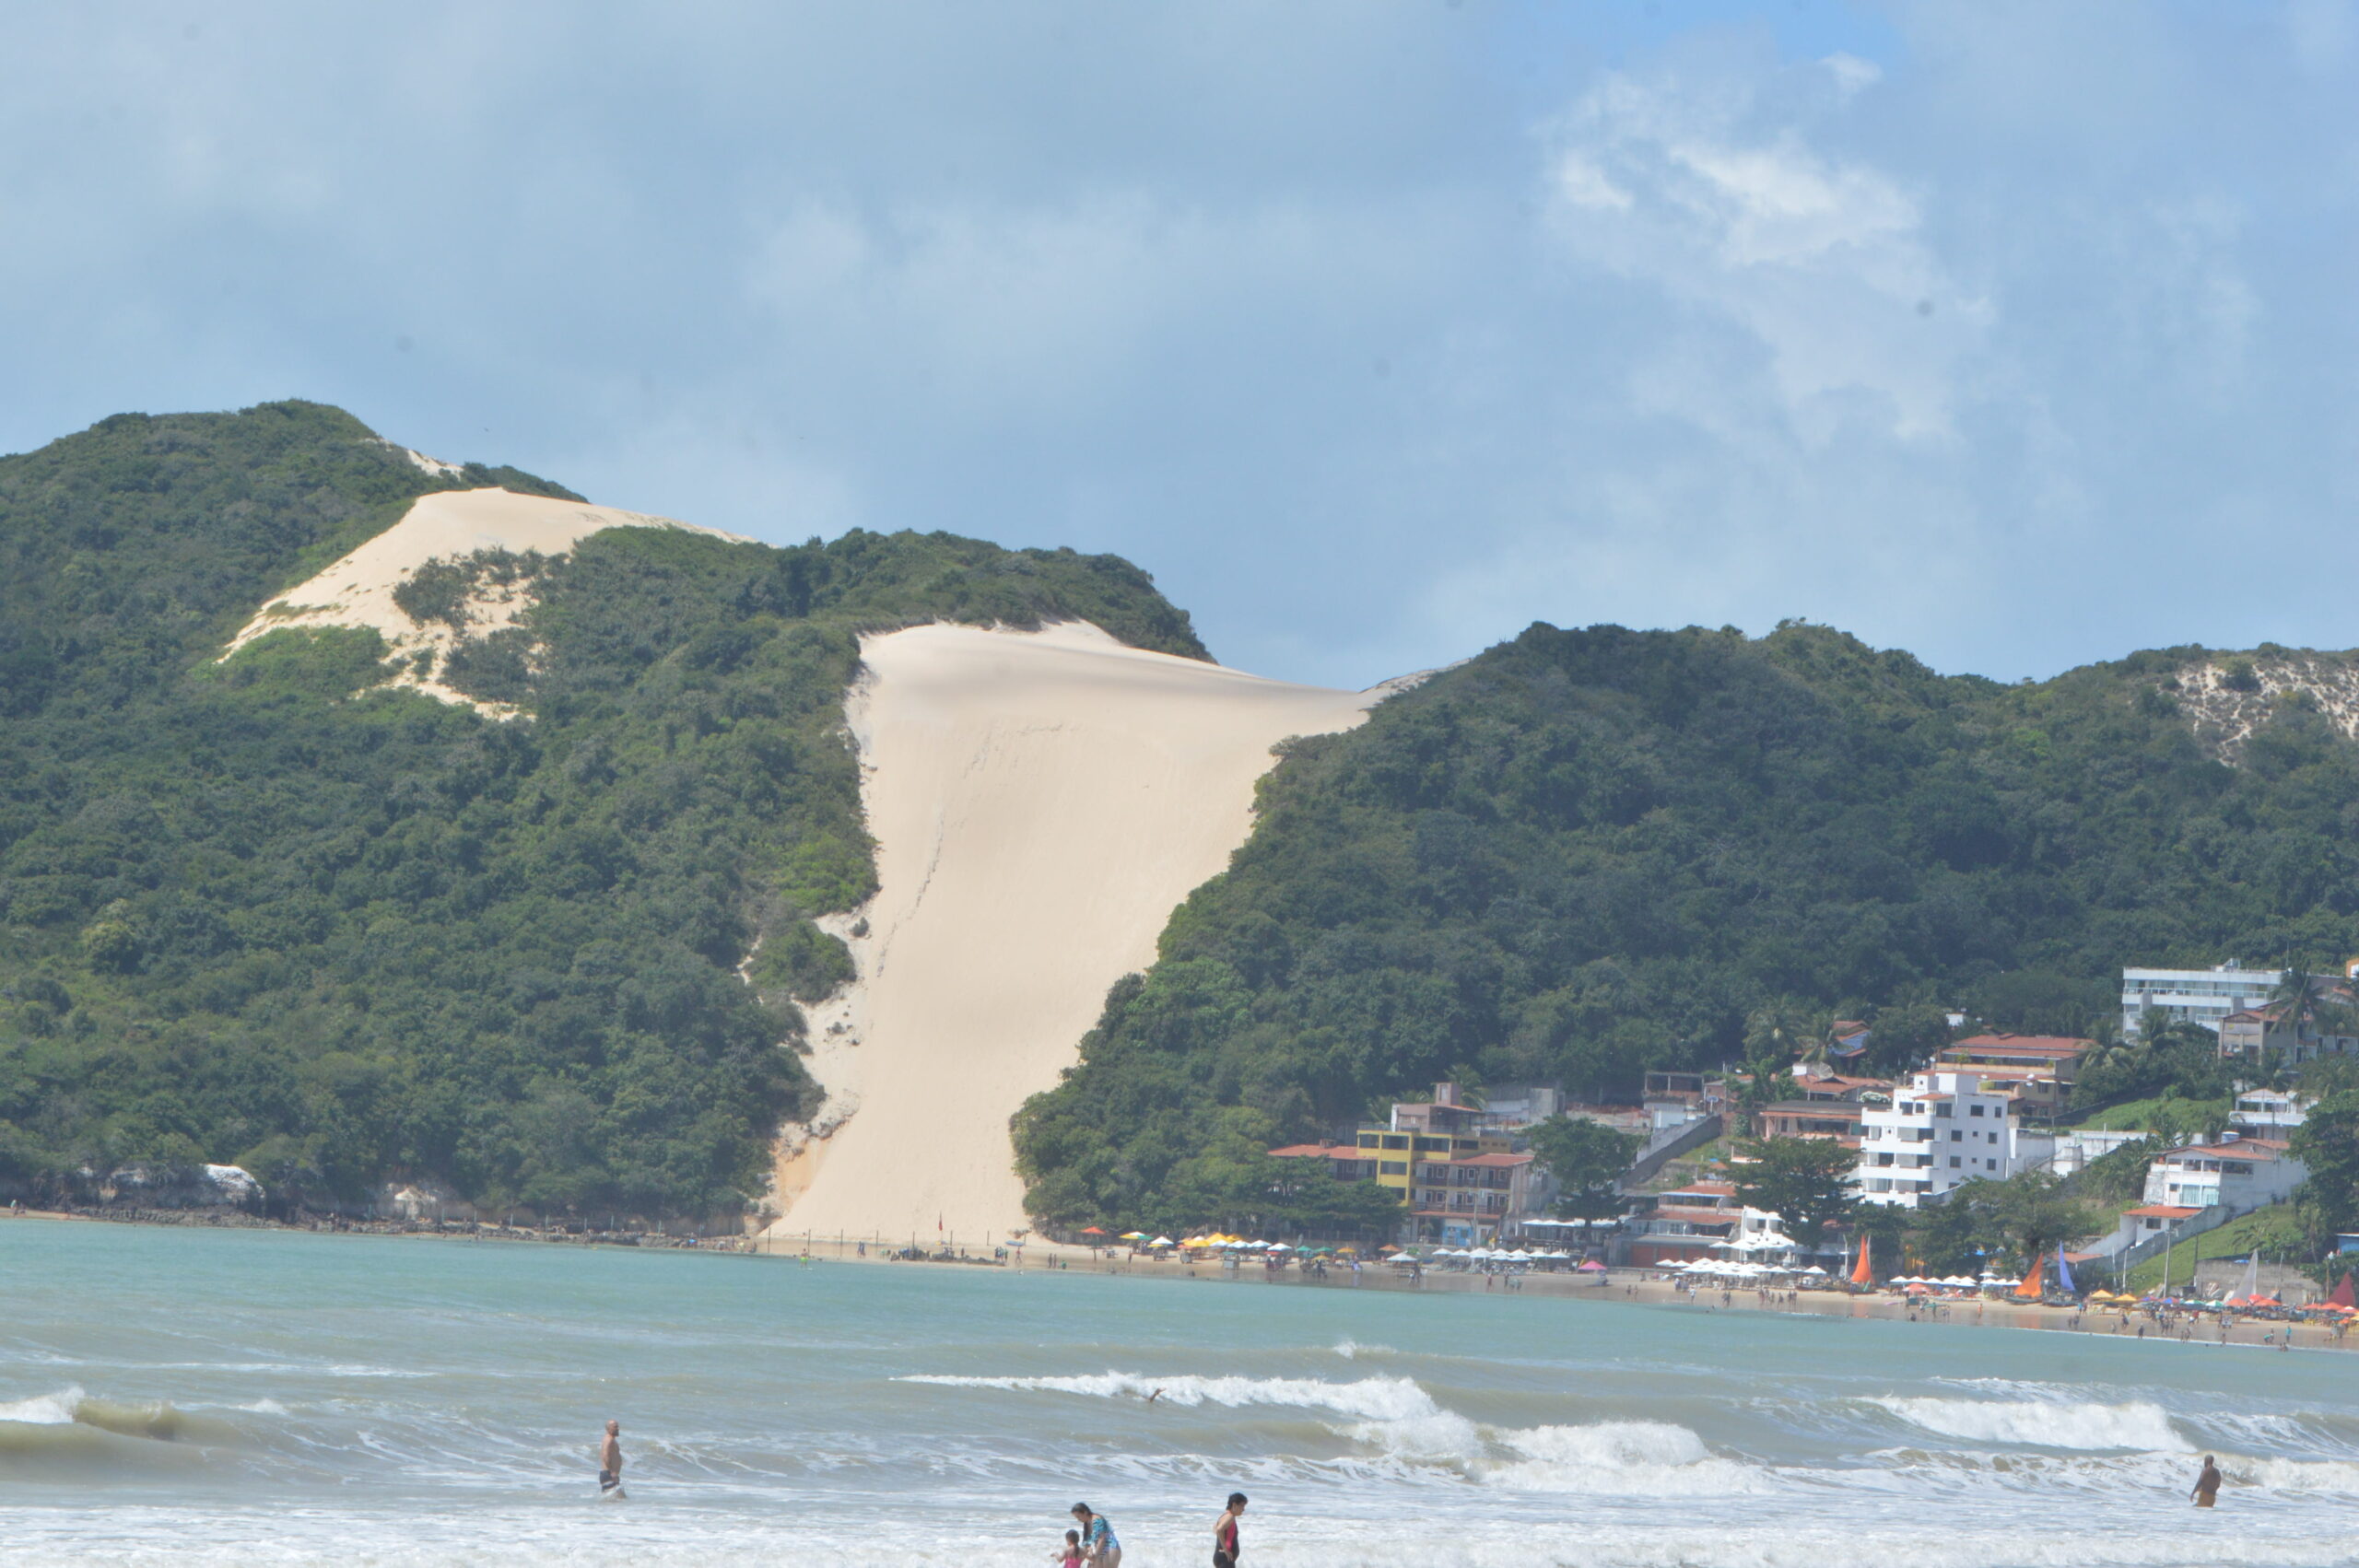 Grupo com 10 turistas é assaltado próximo ao Morro do Careca, em Natal